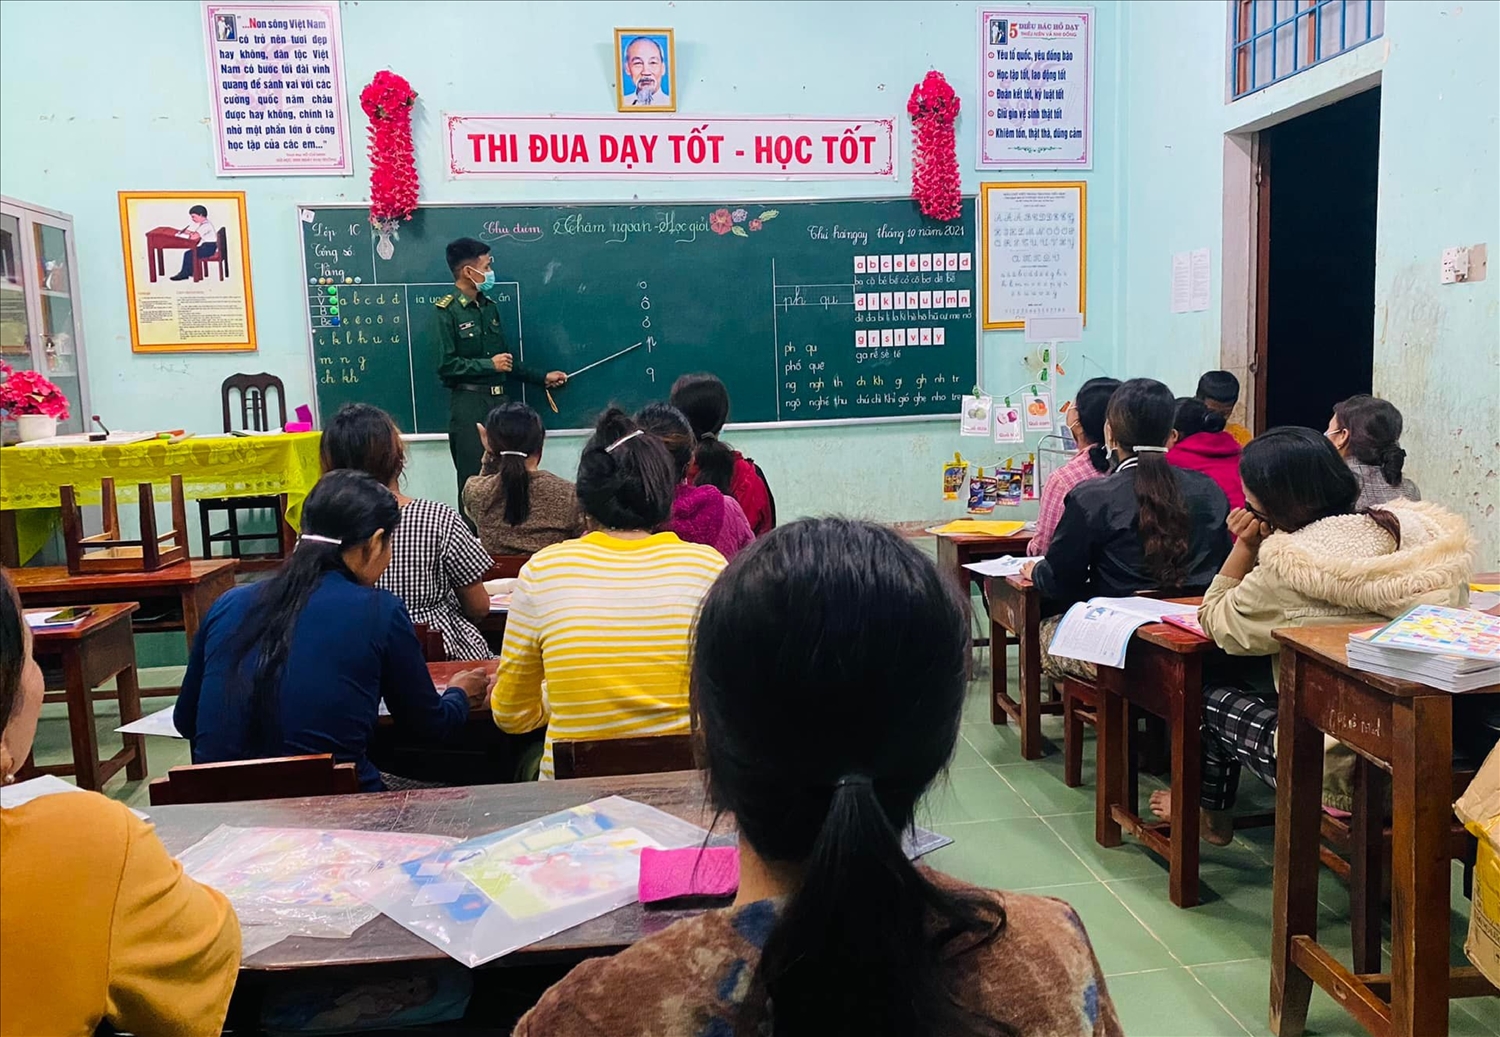 Cán bộ Đồn Biên phòng Ba Tầng, BĐBP Quảng Trị trực tiếp đứng lớp dạy chữ cho người dân.